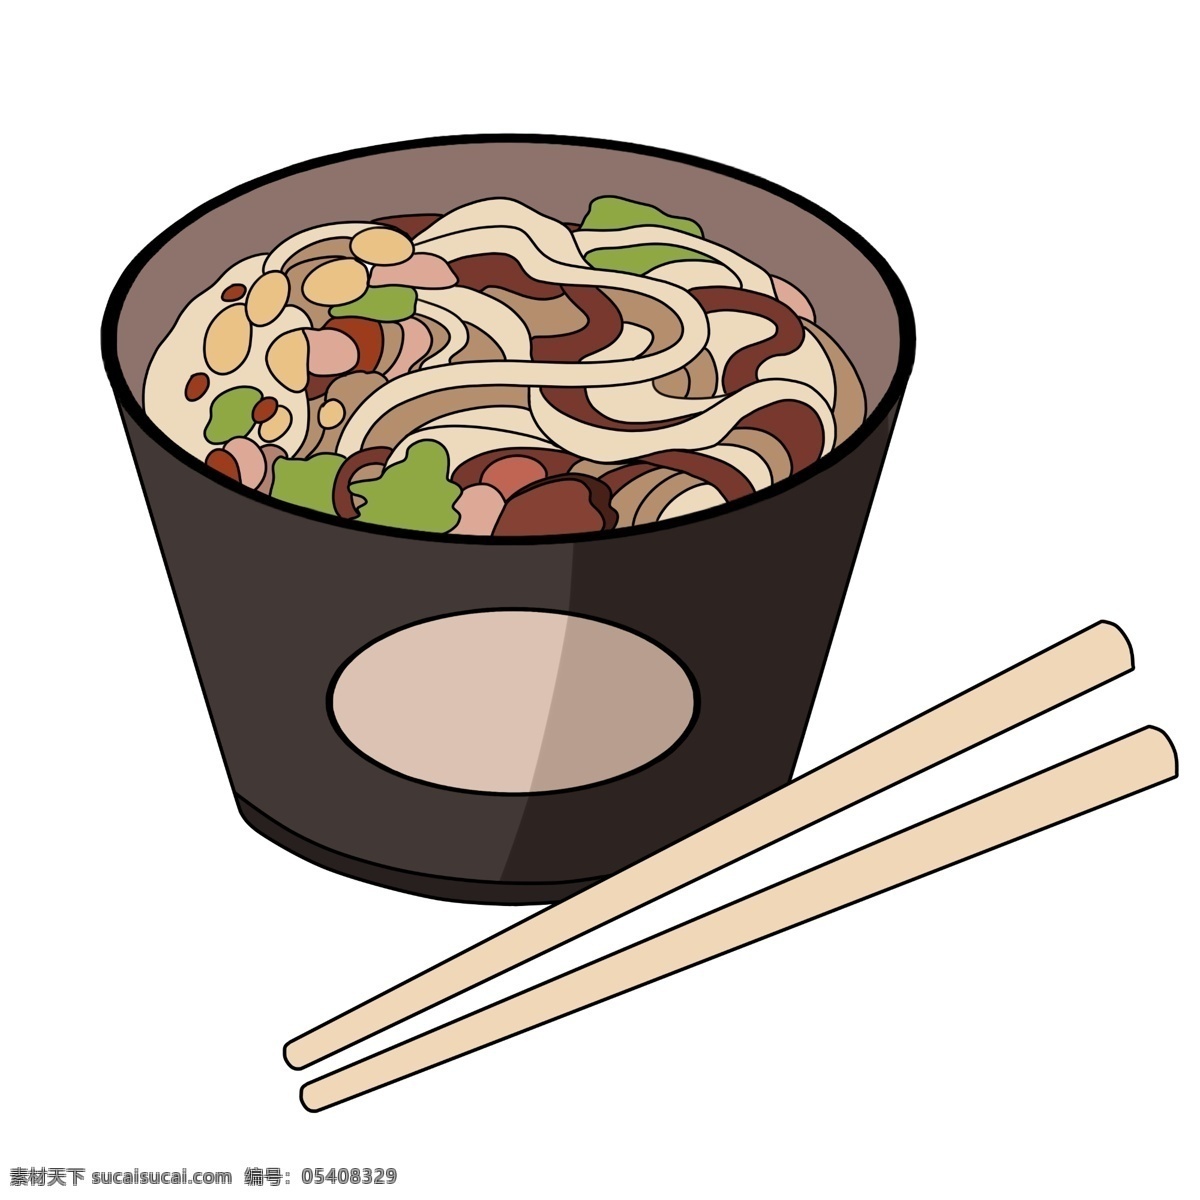 美味 的卡 通 酸 辣 粉 小吃插画 美味的食物 卡通食物插画 酸辣粉 黑色的碗具 白色的筷子 创意食物插画